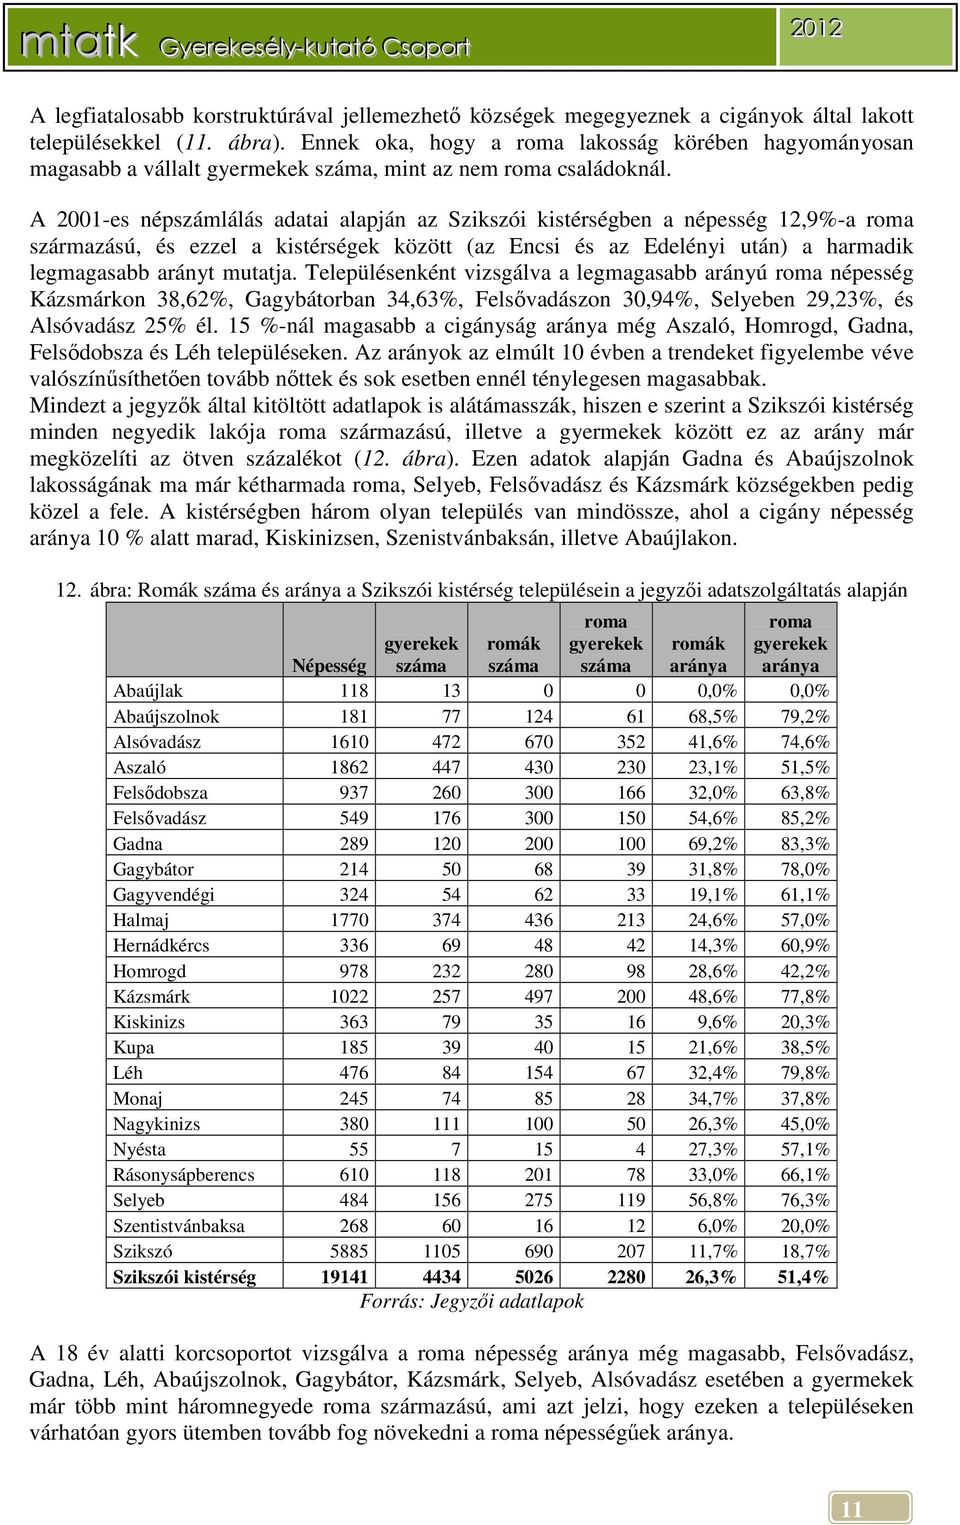 A 2001-es népszámlálás adatai alapján az Szikszói kistérségben a népesség 12,9%-a roma származású, és ezzel a kistérségek között (az Encsi és az Edelényi után) a harmadik legmagasabb arányt mutatja.